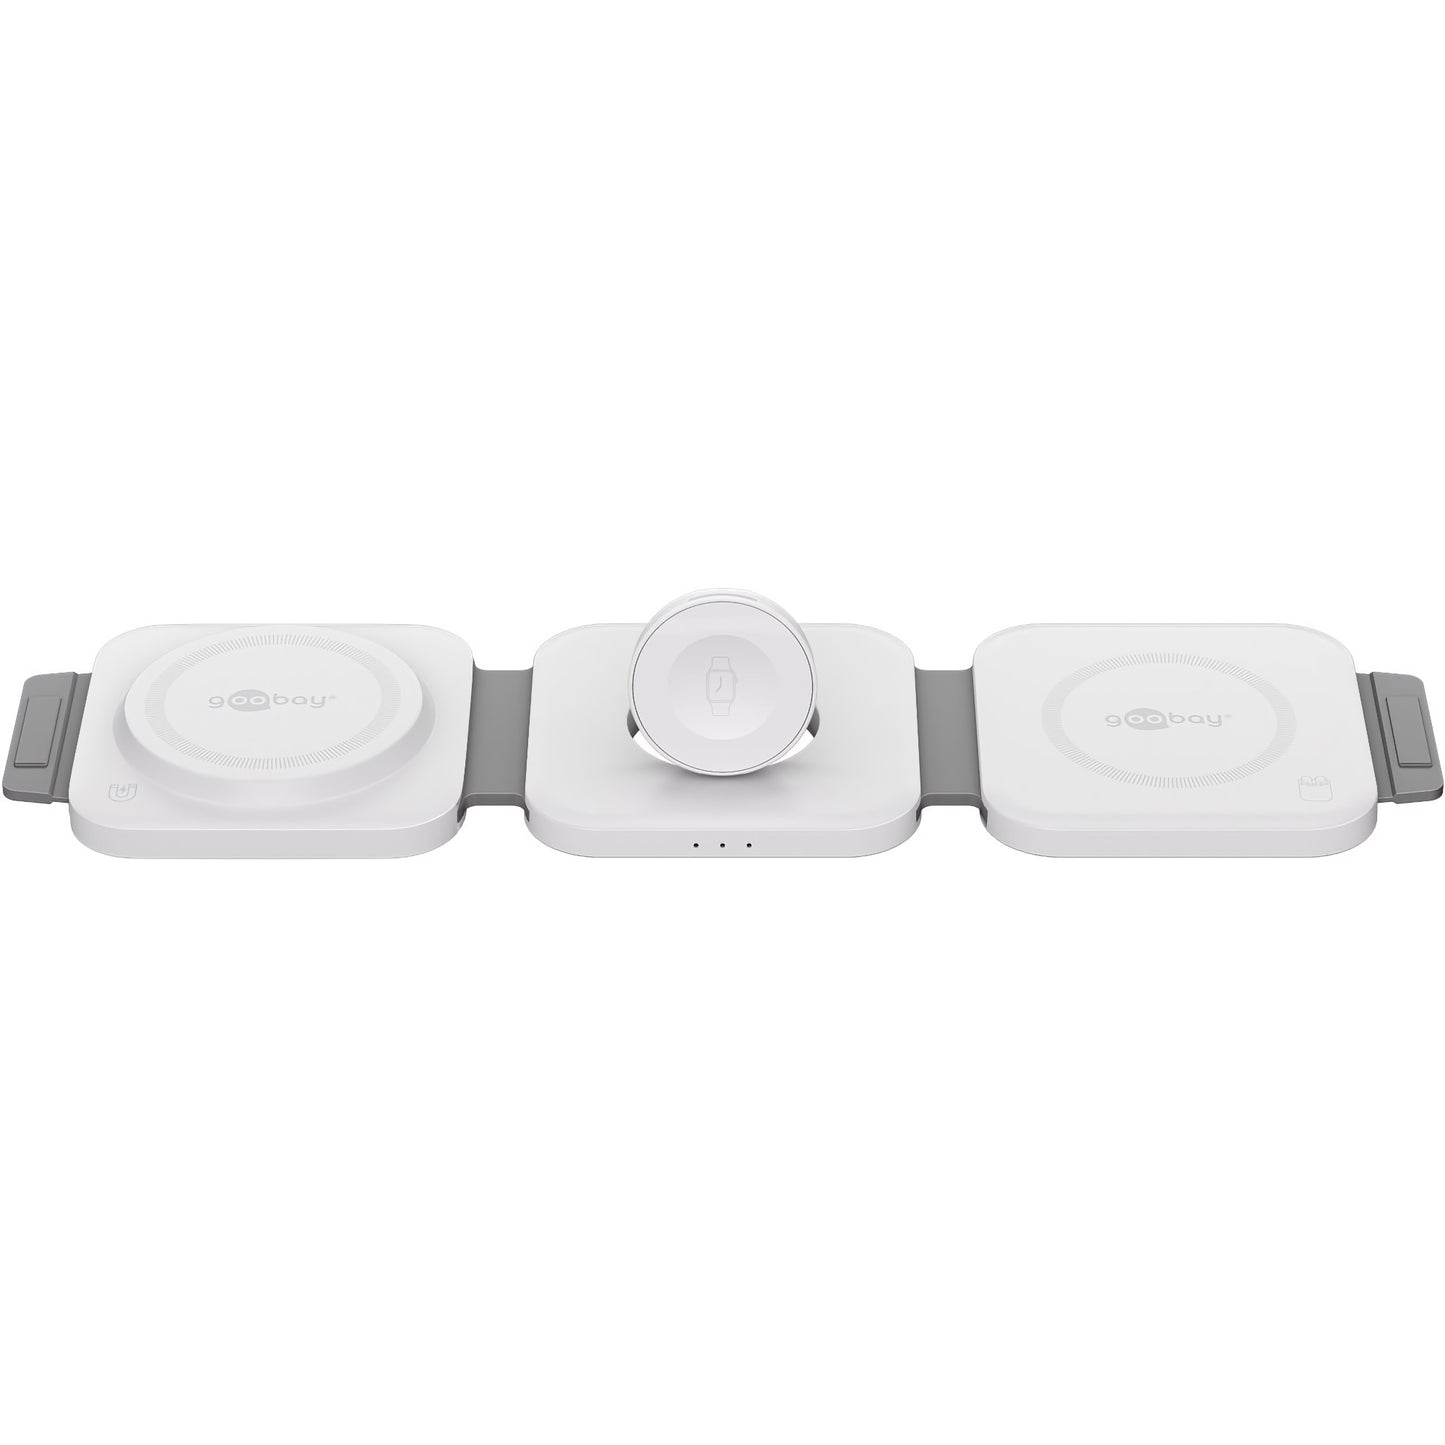 Kabelloses 3in1 Ladegerät für iPhone, Apple Watch und AirPods